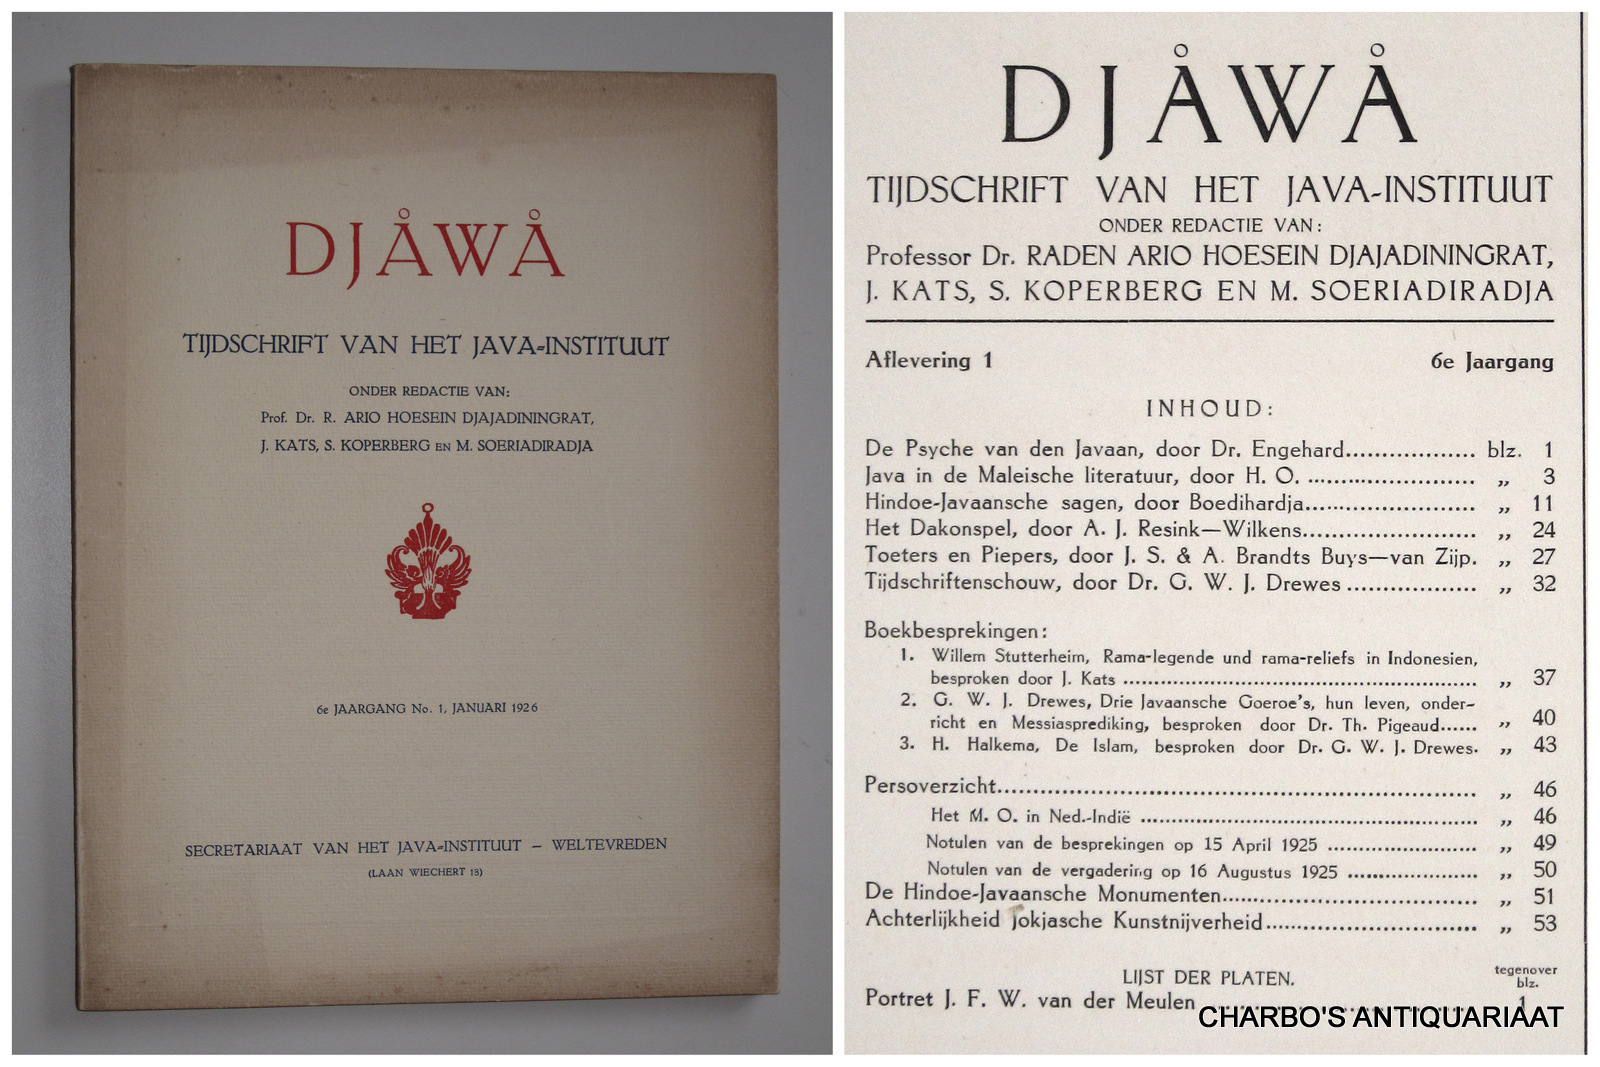 DJAJADININGRAT, RADEN AR IO HOESEIN (et al, eds.), -  Djawa. Tijdschrift van het Java-Instituut. 6e jaargang, aflevering 1 (Januari 1926).